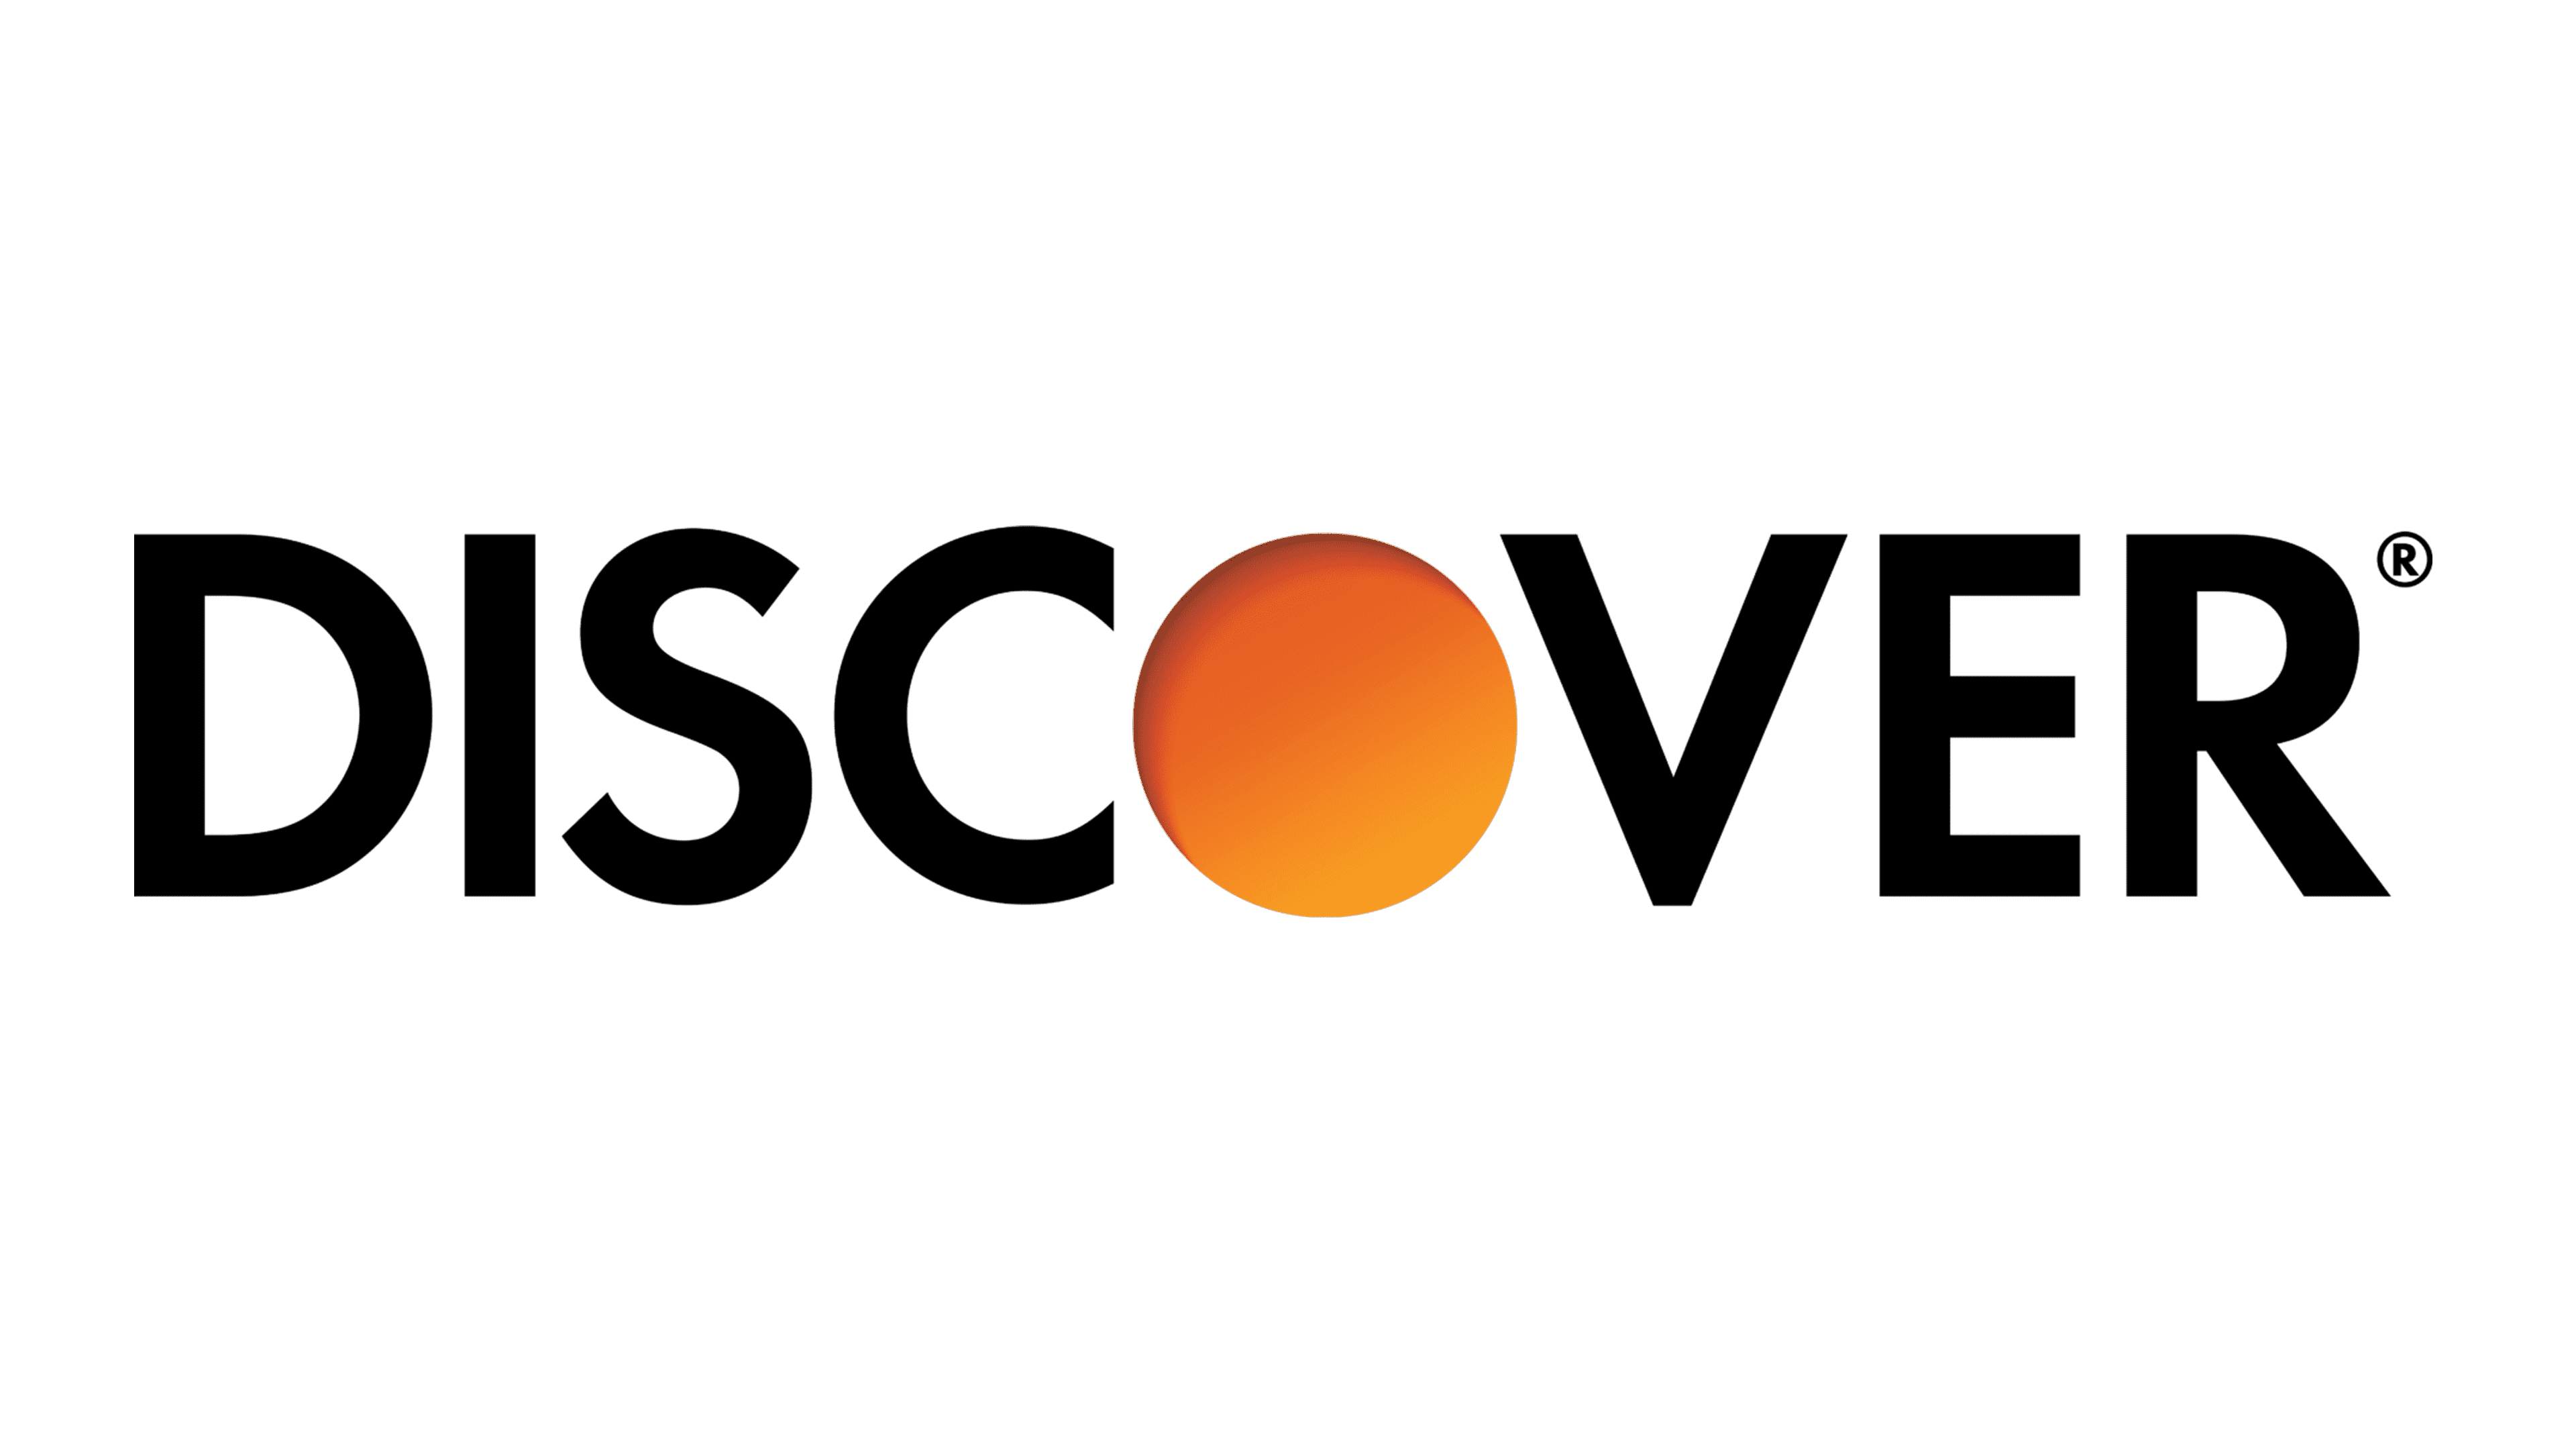 Discover ru. Discover лого. Discover иконка. Карта discover. Discover платежная система.